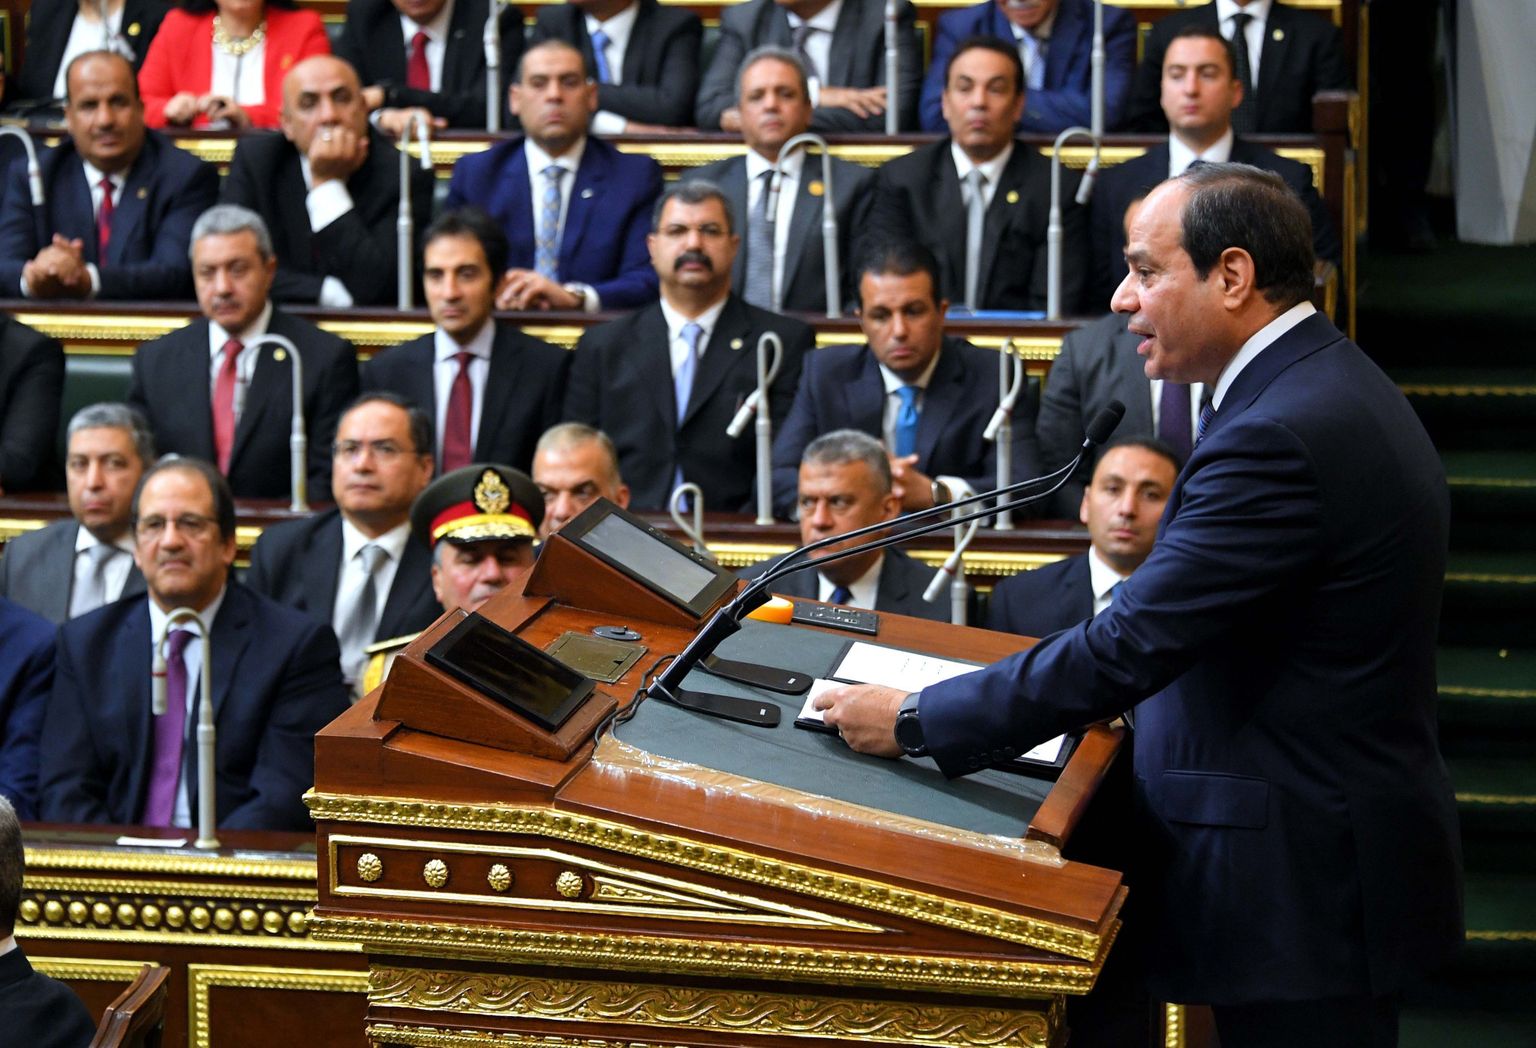 President Abdel Fattah al-Sisi parlamendi ees kõnet pidamas.